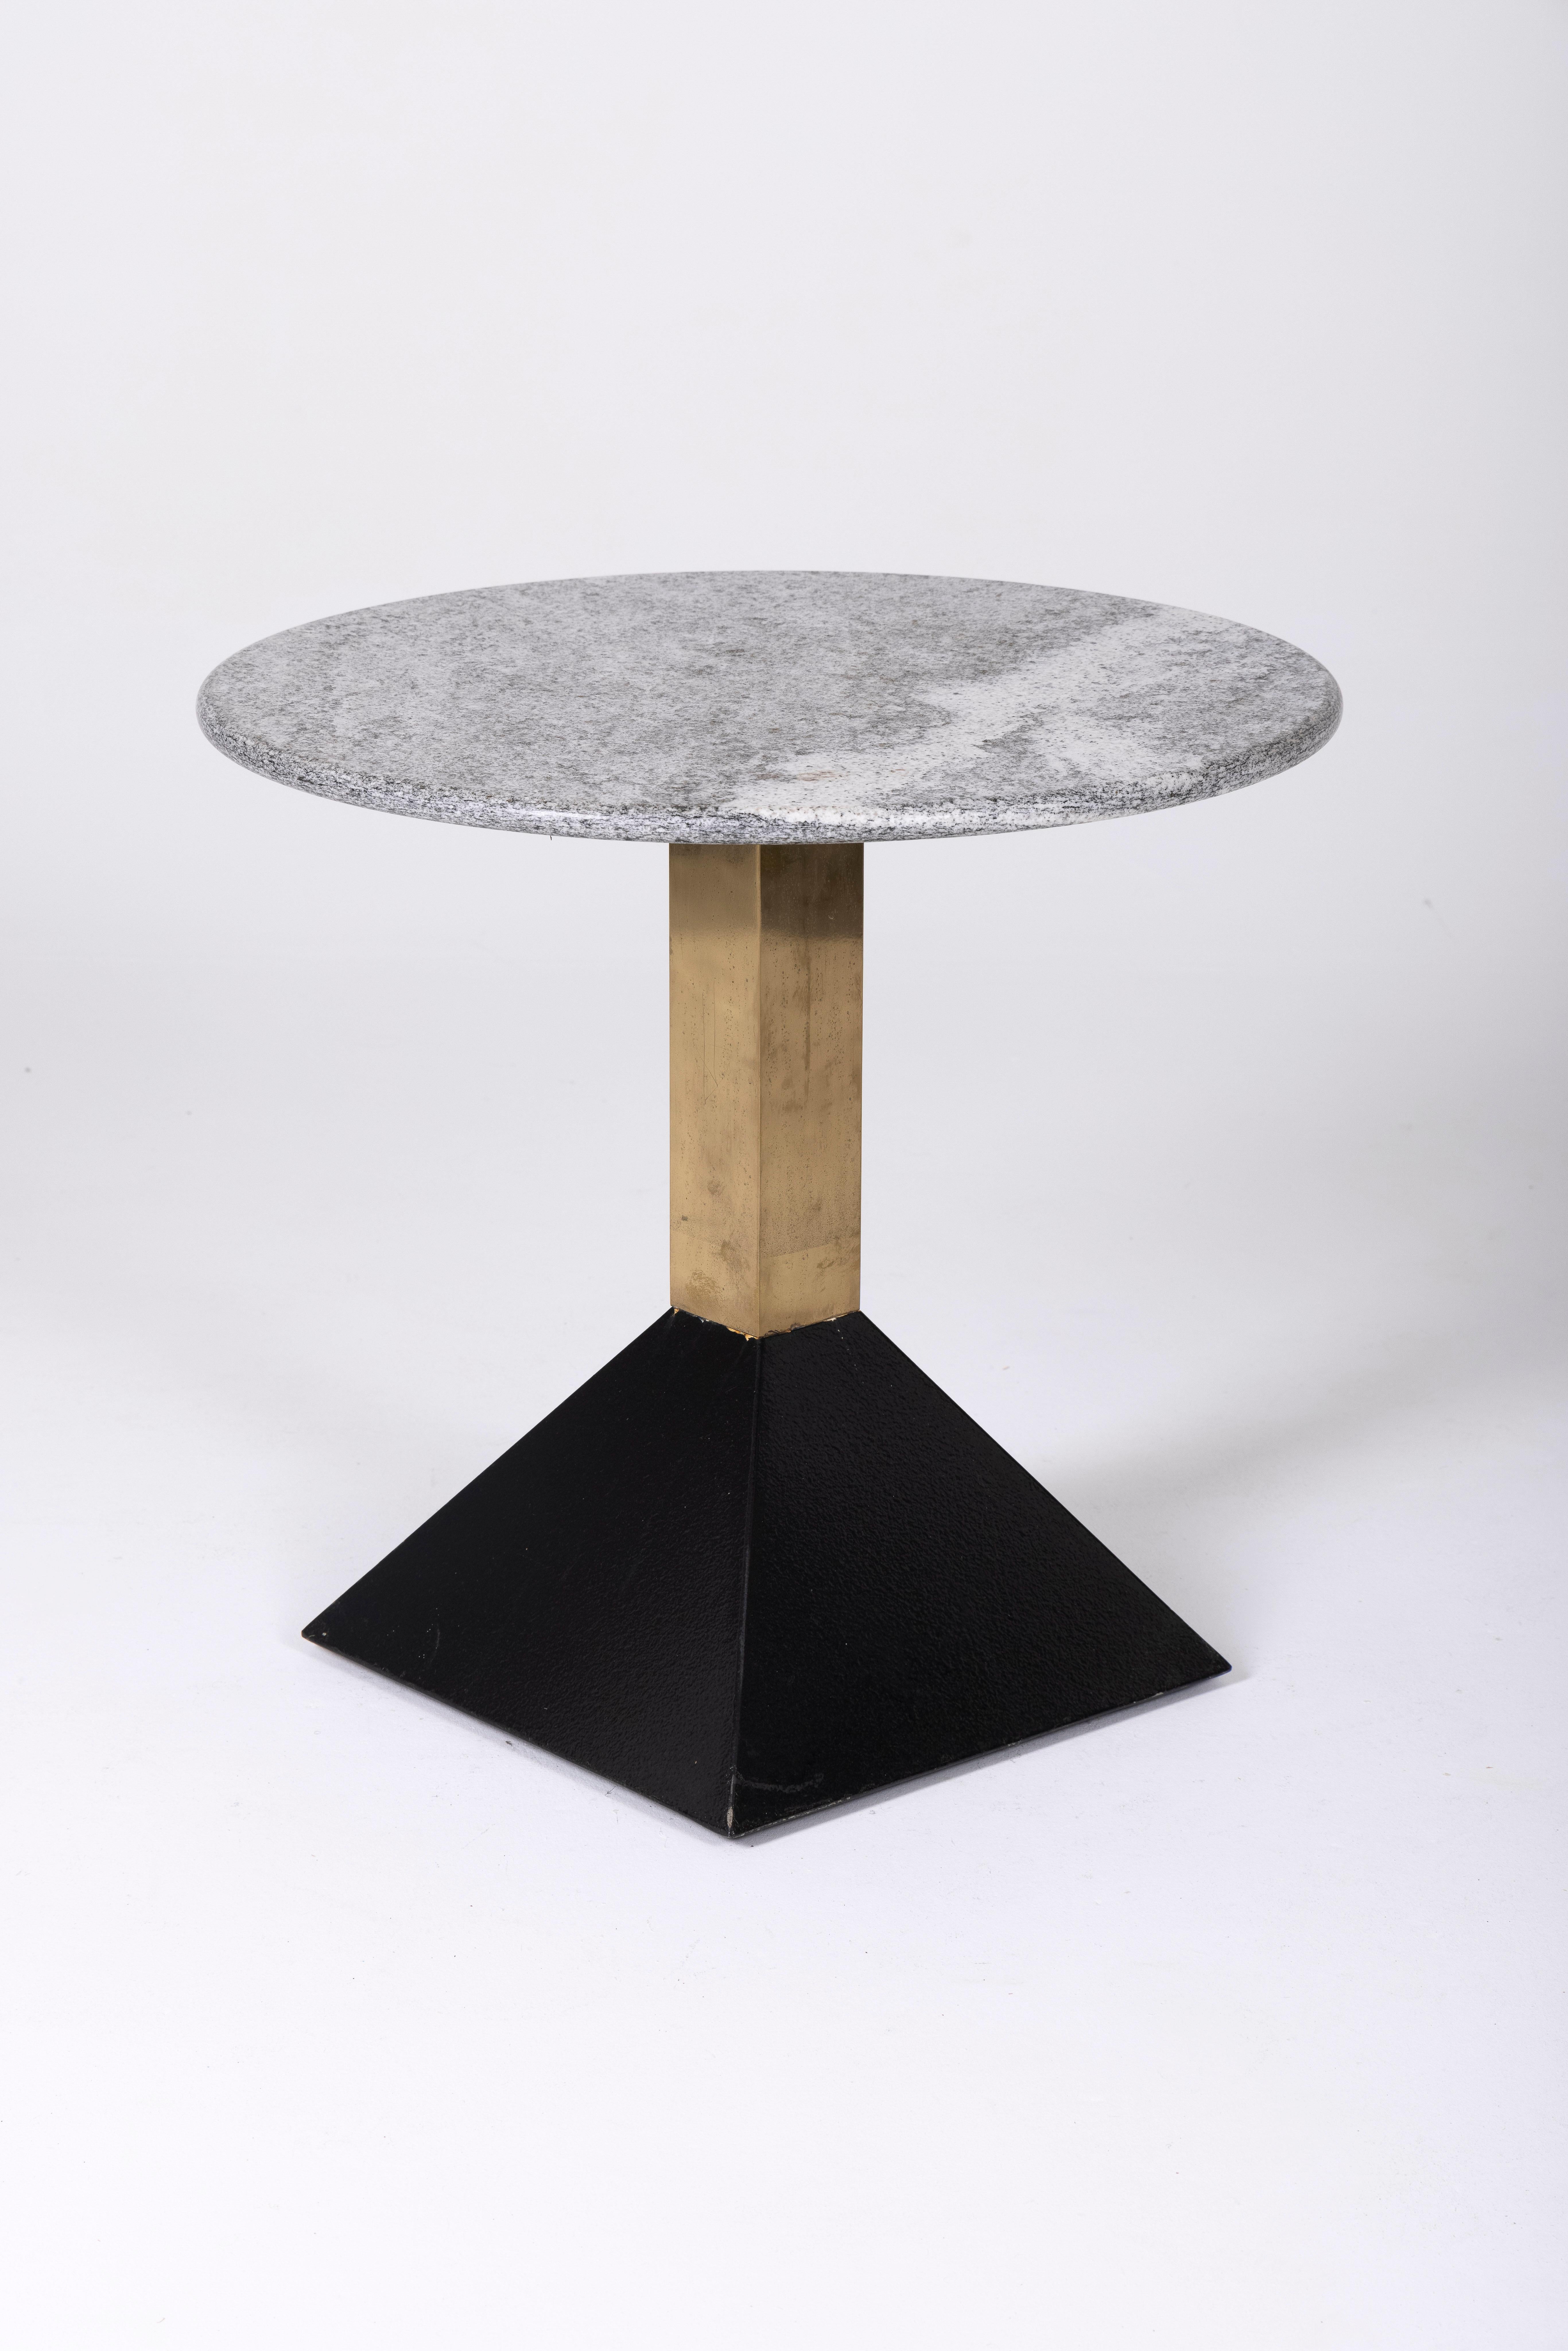 Beistelltisch aus Marmor und Messing aus den 1980er Jahren. Die Tischplatte ist aus grauem Marmor, das Gestell aus schwarz lackiertem Metall und Messing. Dieser Beistelltisch ergänzt die Möbel im Memphis-Stil.
DV148